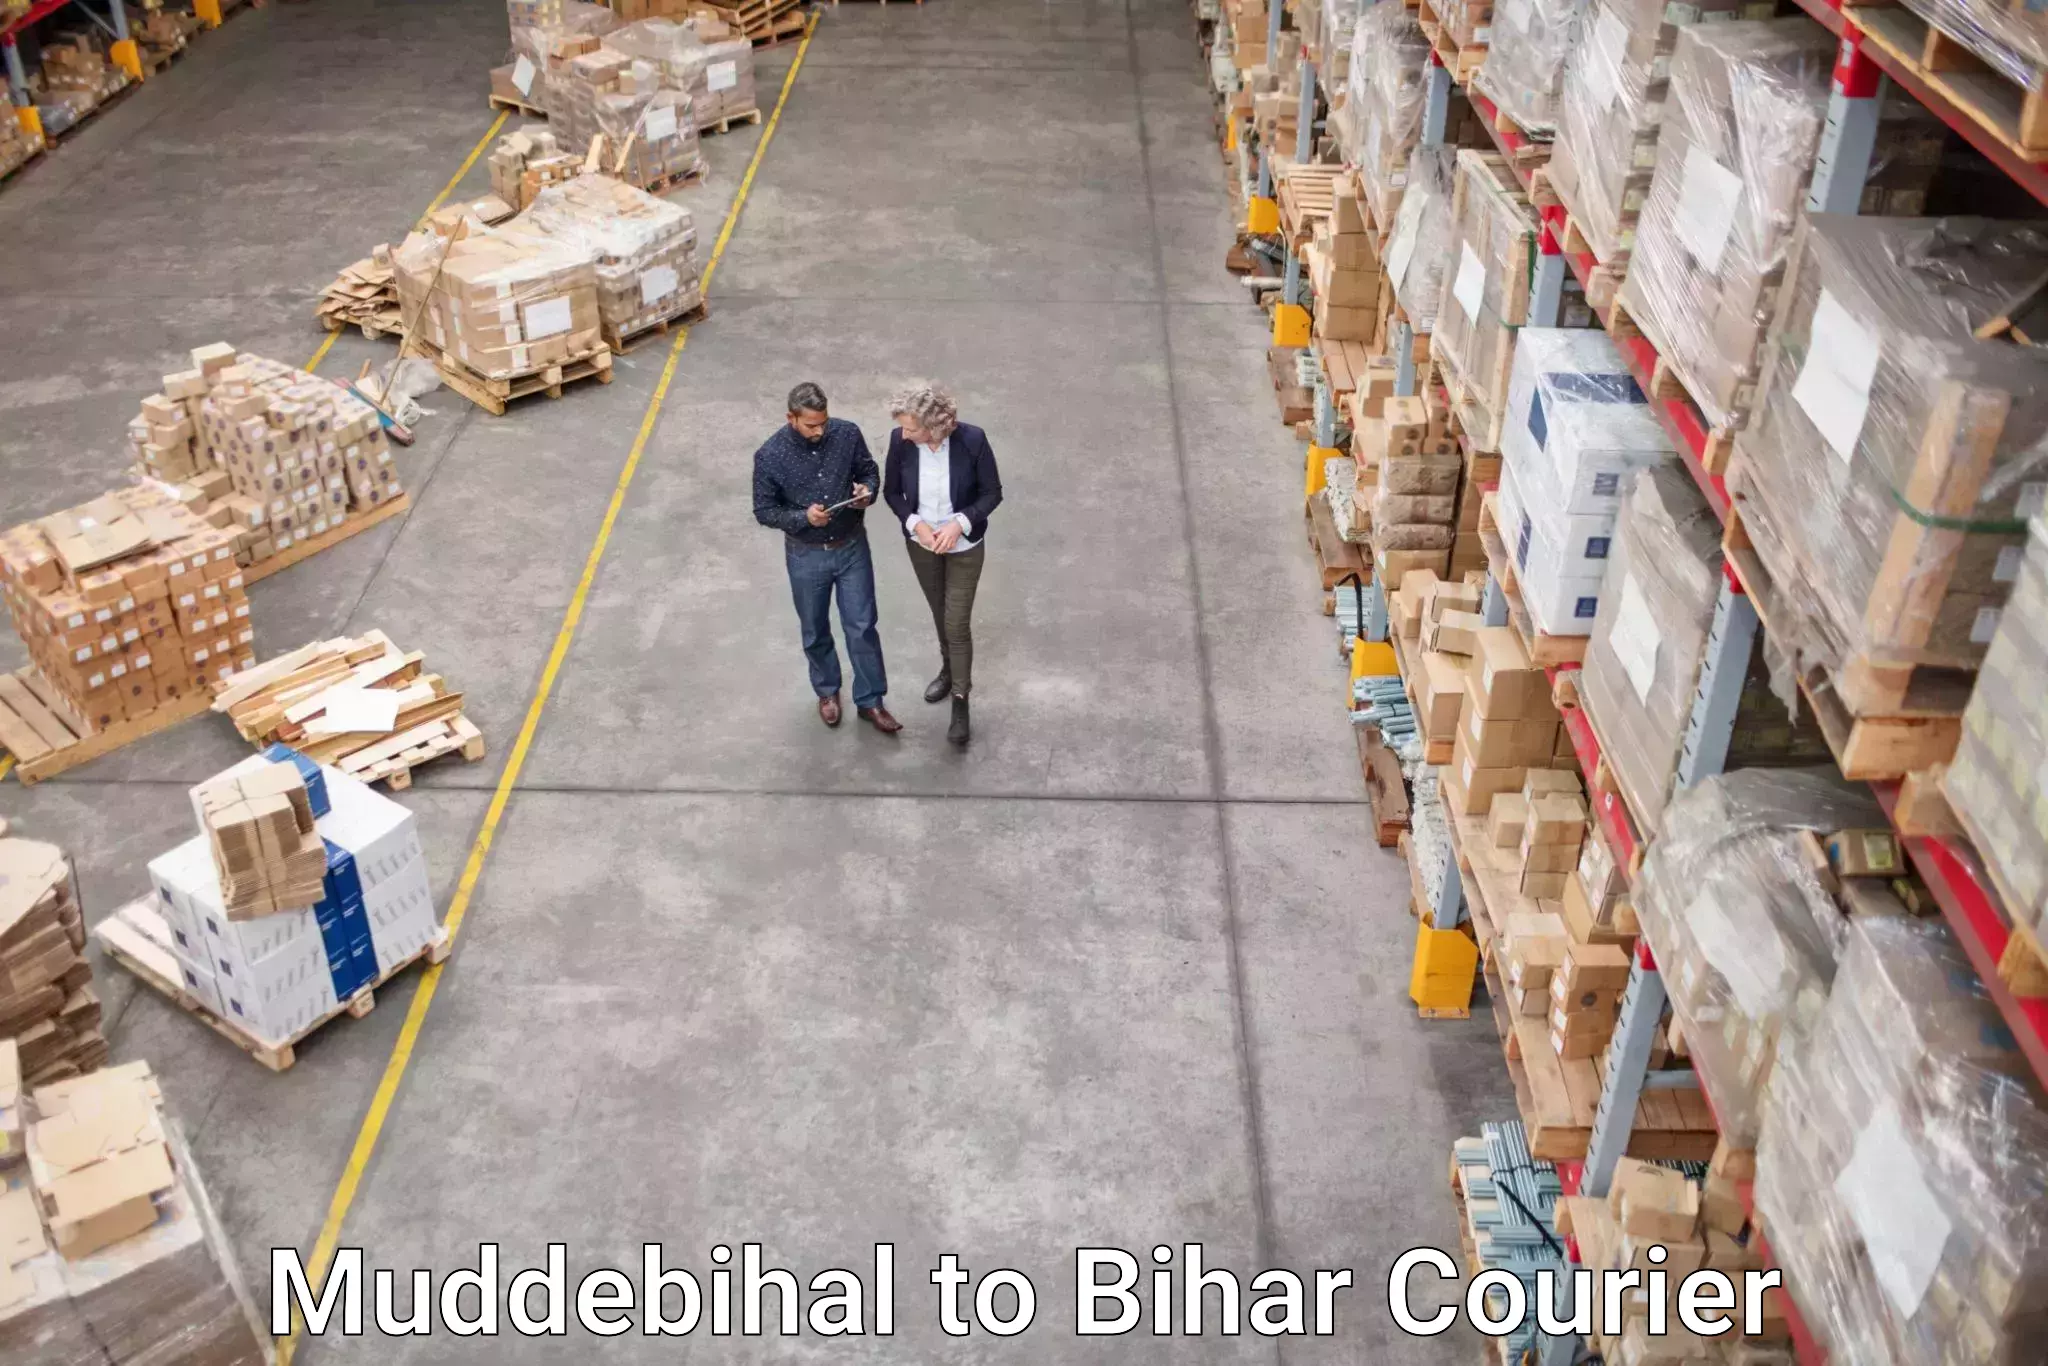 Express shipping in Muddebihal to Bihar